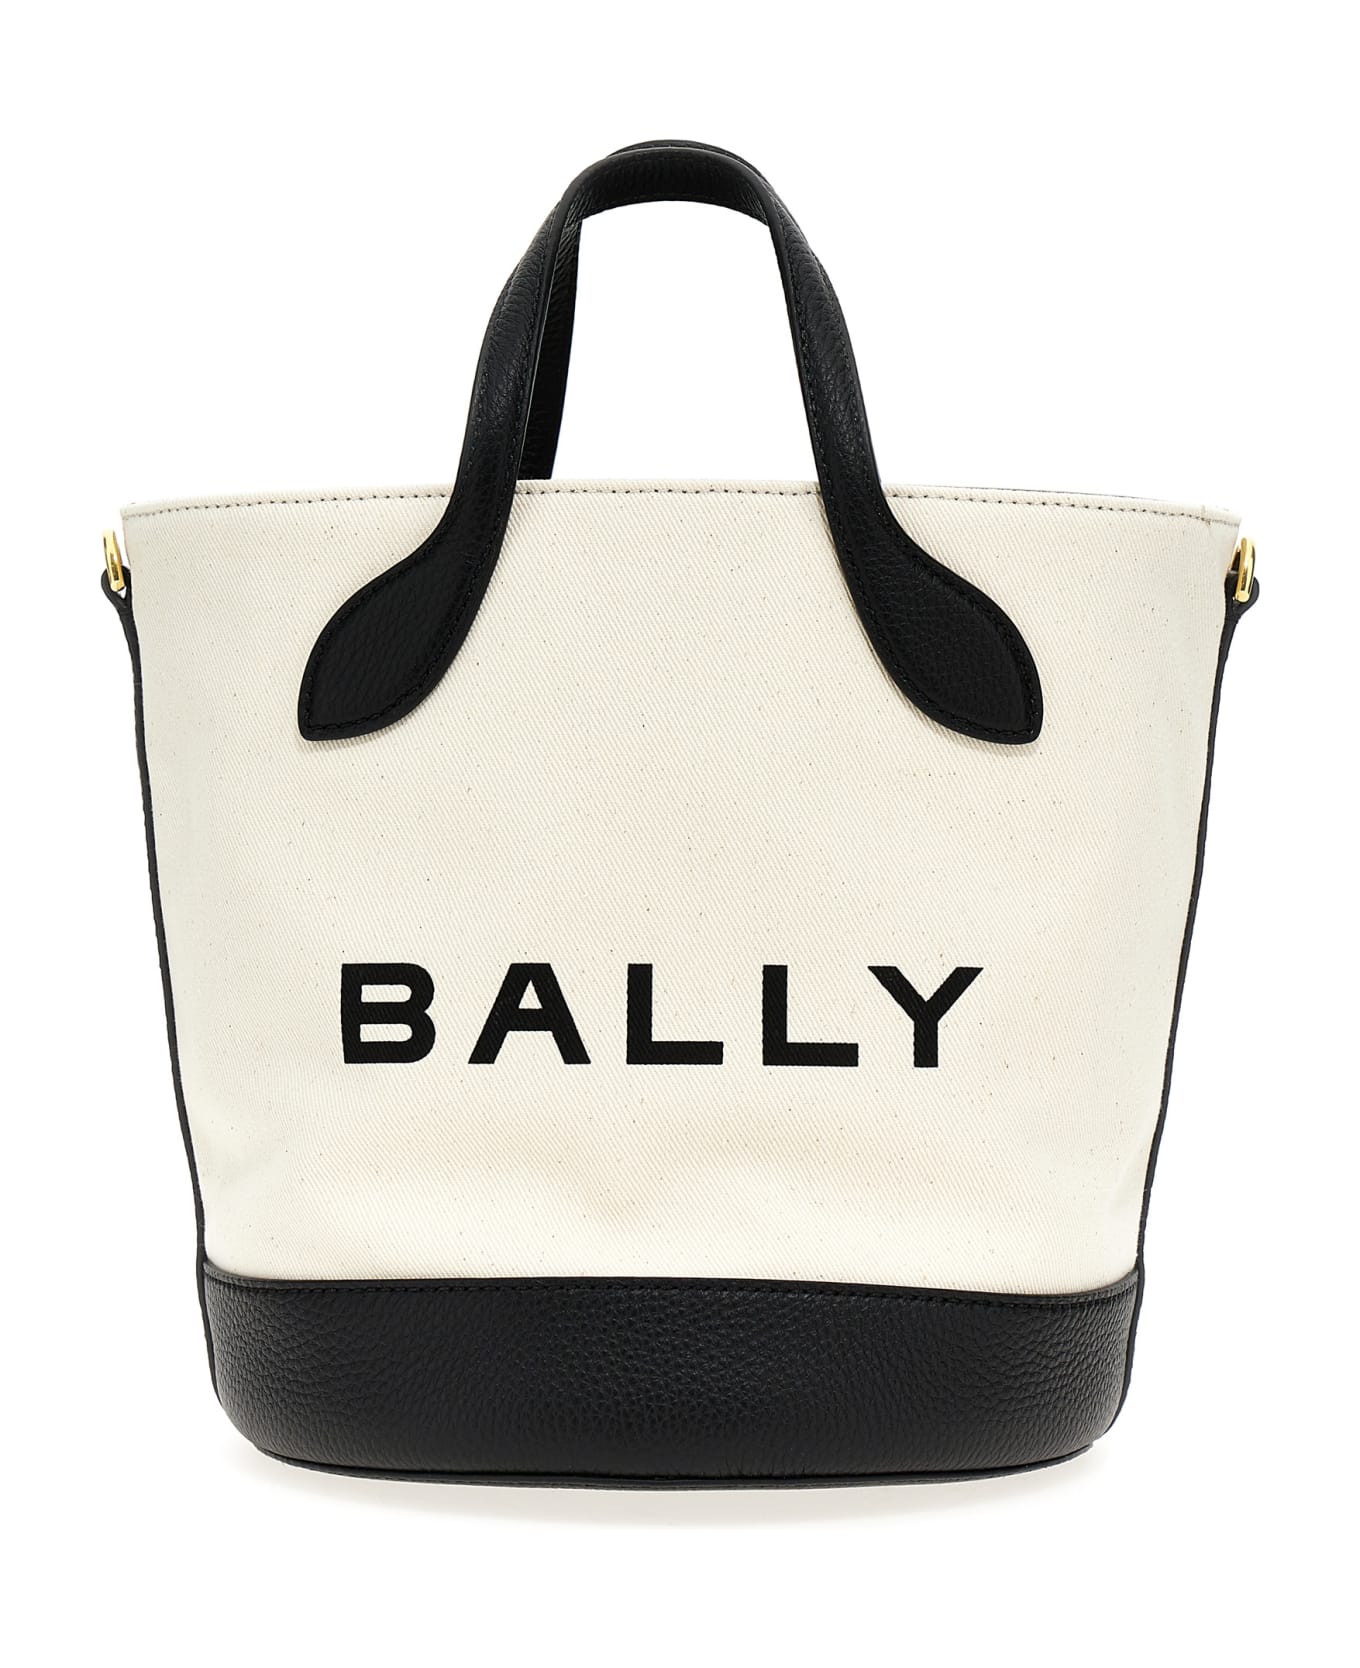 Bally 'bar' Handbag - White/Black